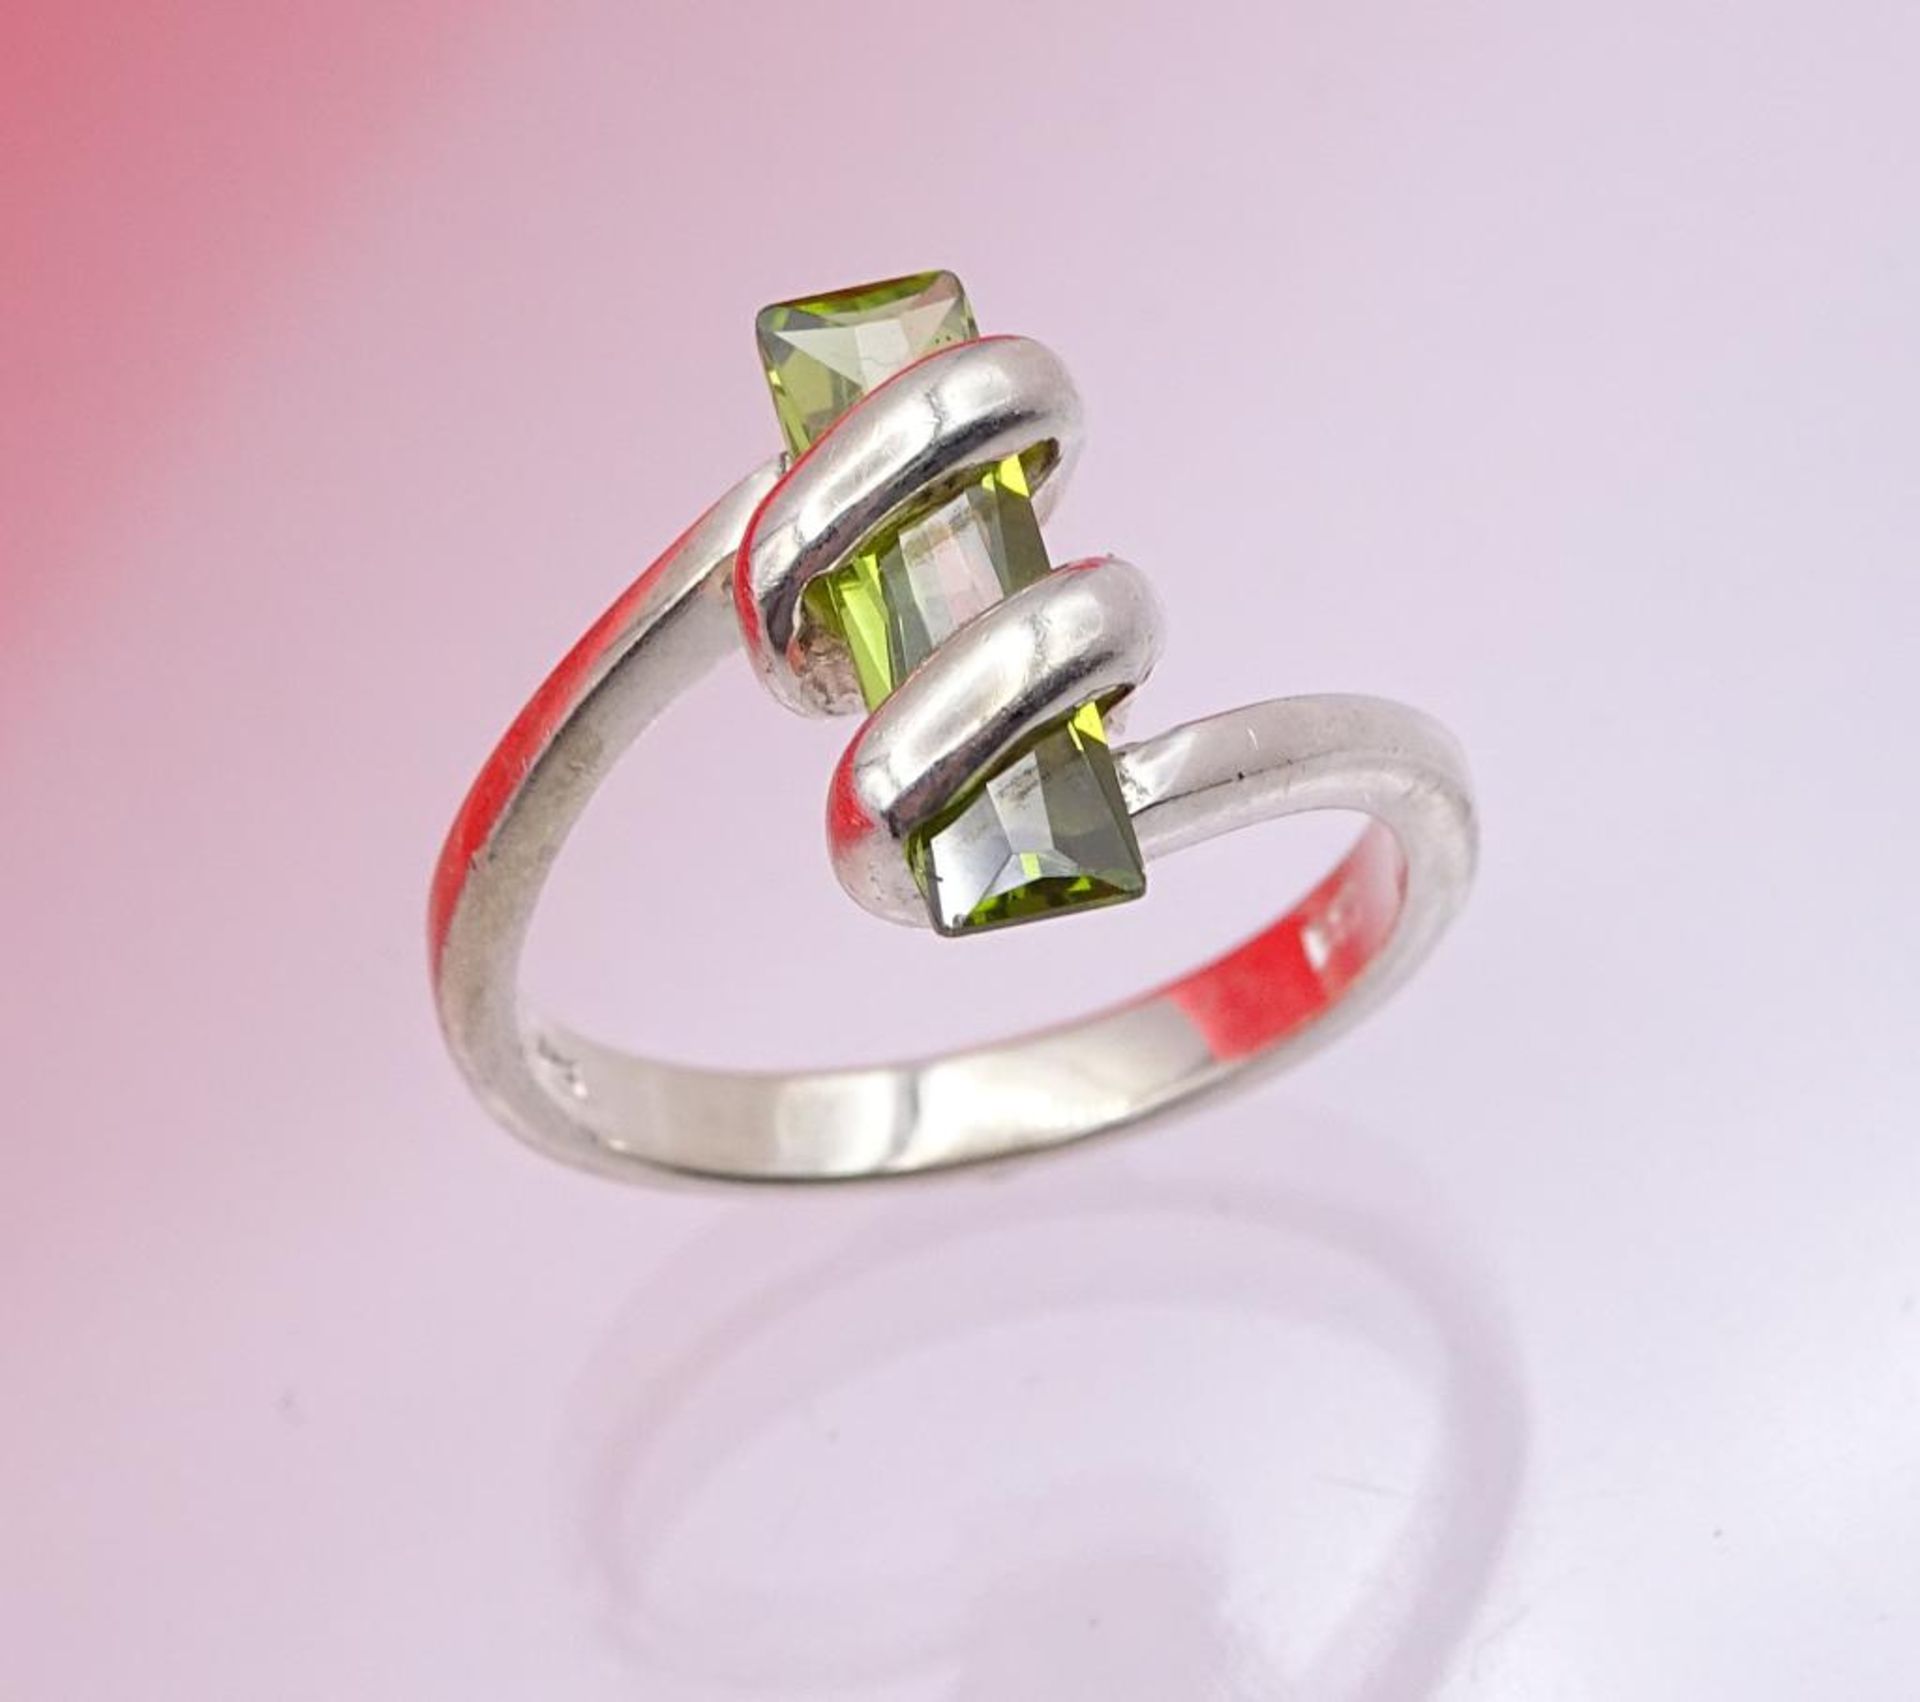 925er Silber Ring mit einen grünen facettierten Stein, 3,7gr., RG 5 - Image 4 of 4